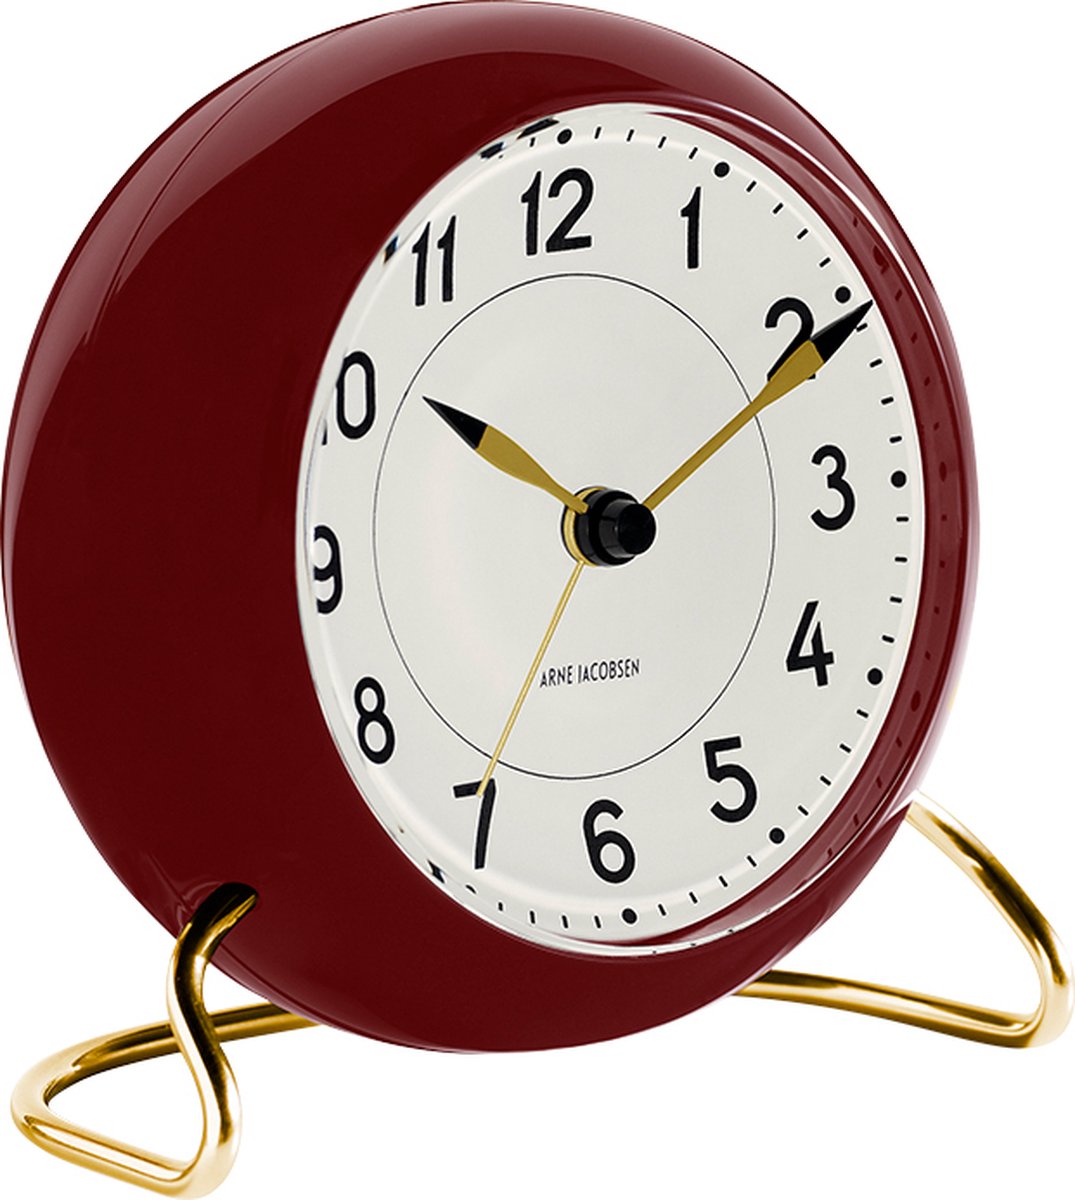 Arne Jacobsen Station Table Clock Wekker Bordeaux - Ø 11 cm 43676